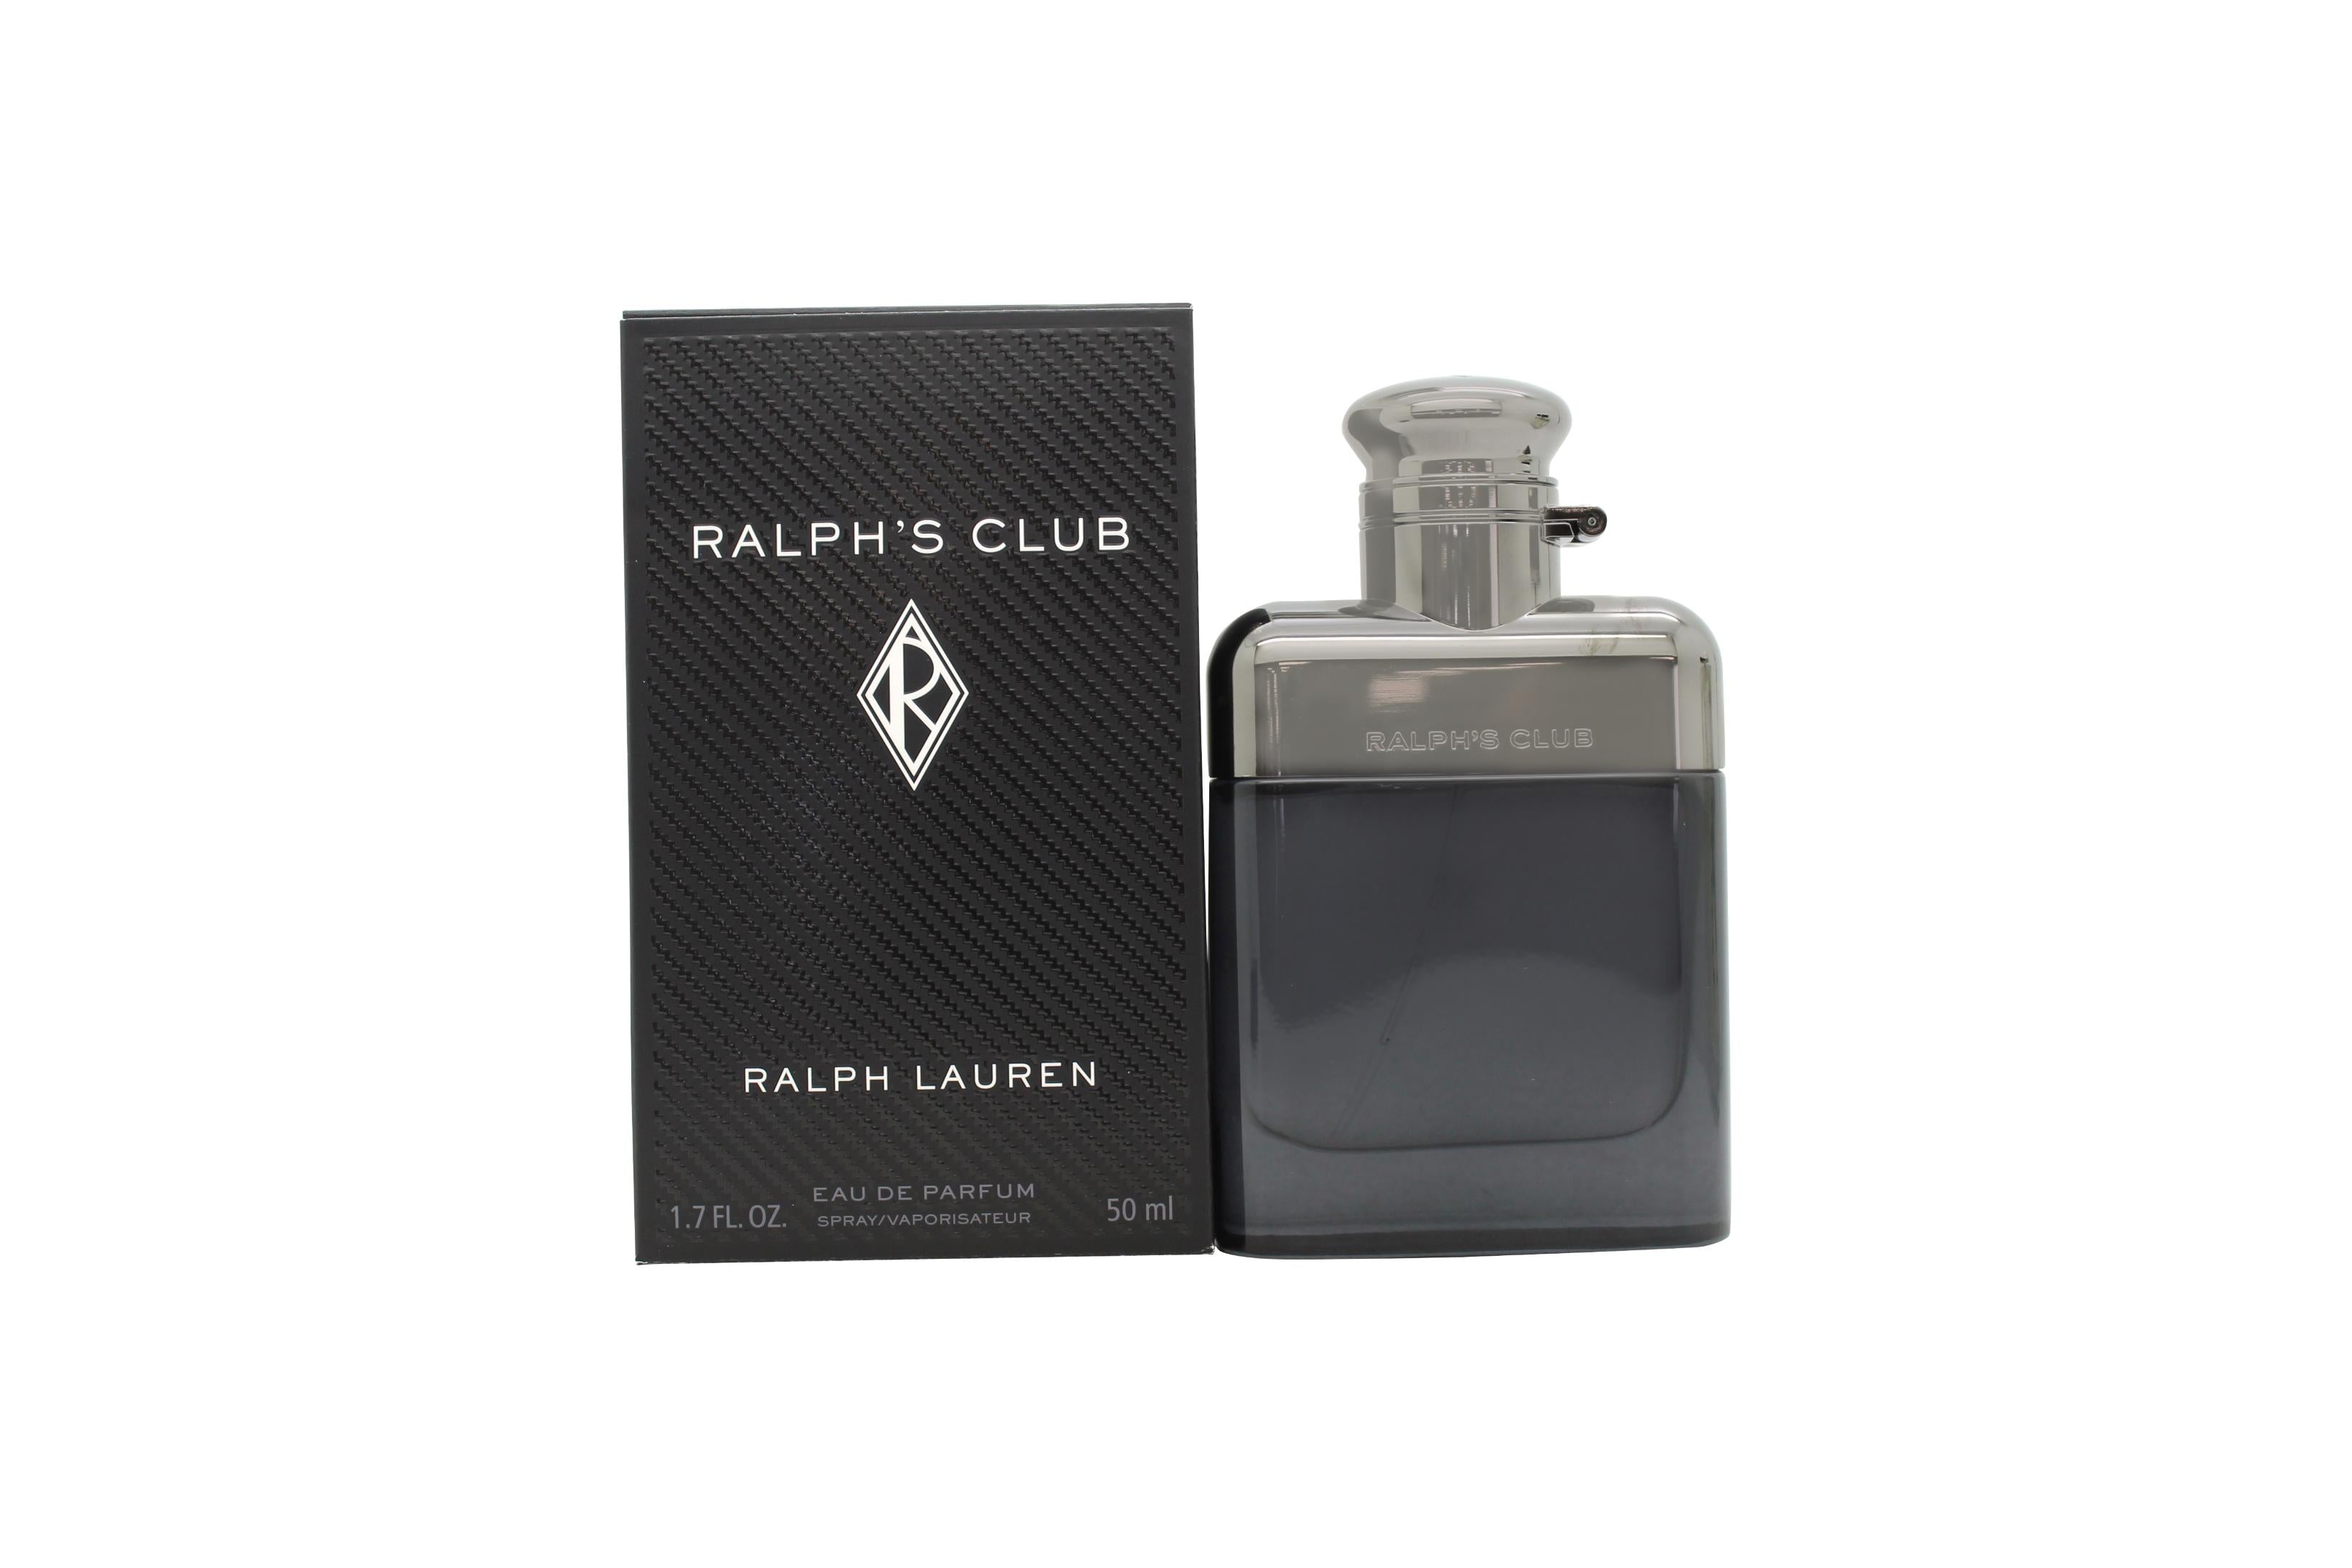 View Ralph Lauren Ralphs Club Eau de Parfum 50ml Spray information